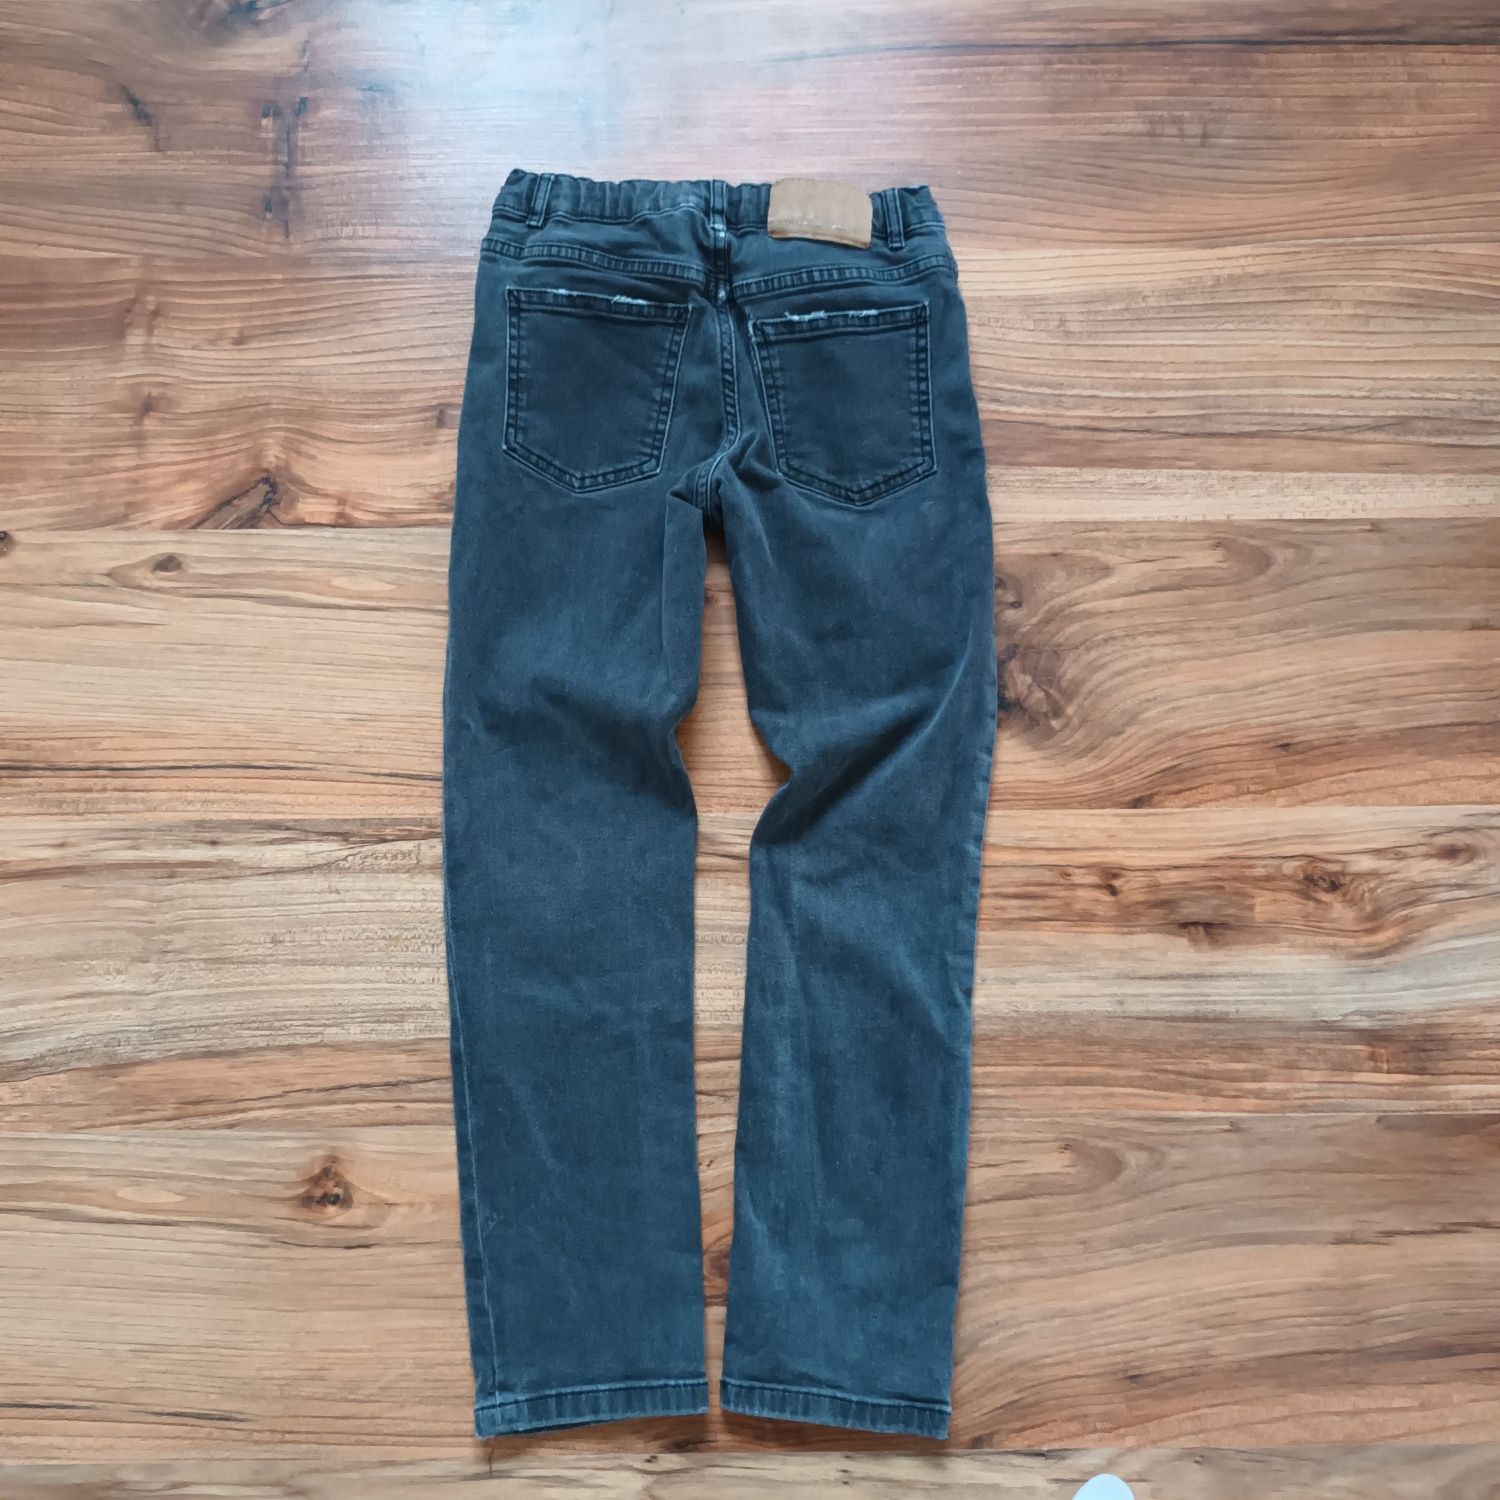 Spodnie 134 ZARA szare jeansy rurki chłopięce